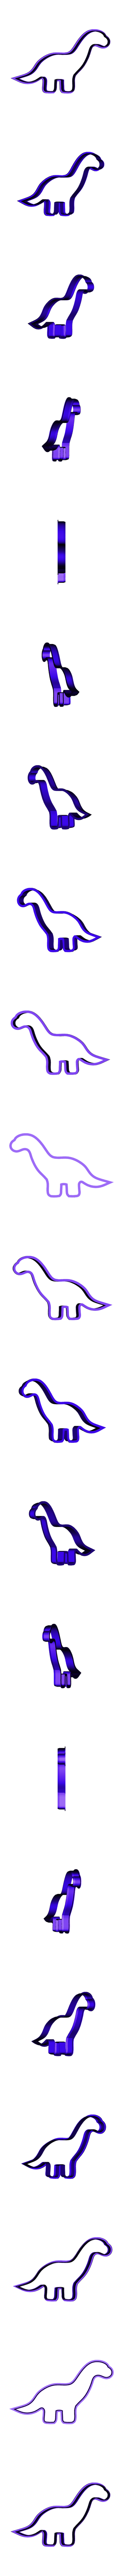 dinosaurio_4_-_1.3.stl Télécharger le fichier STL DINOSAURES long cou • Objet pour imprimante 3D, LemaT